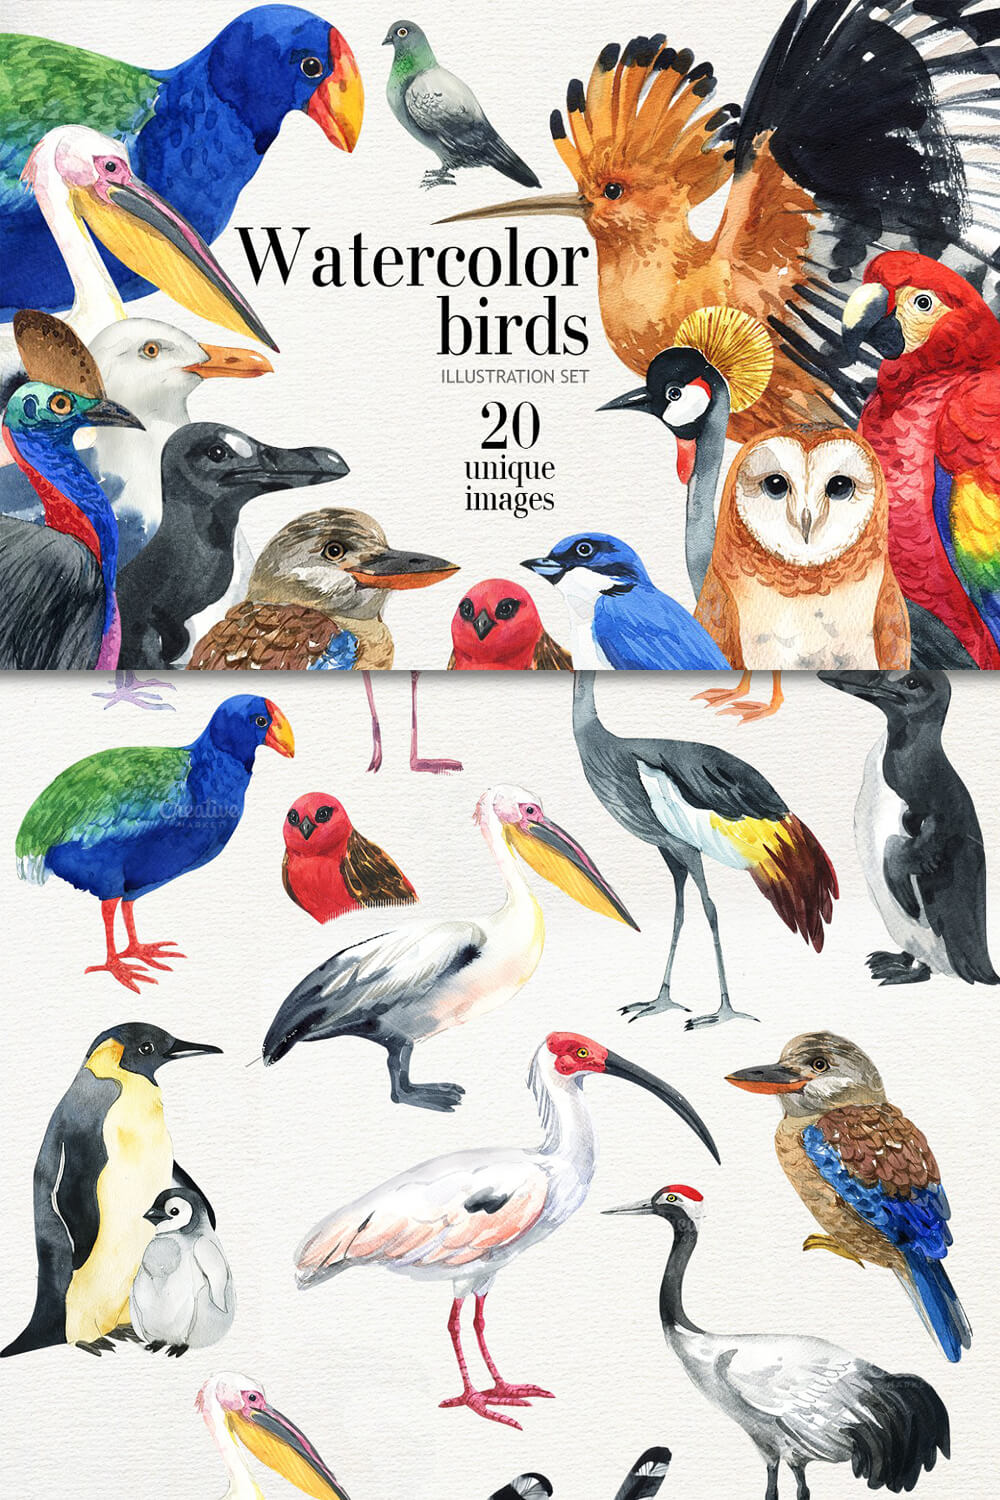 Title: Watercolor birds illustration Set, 20 unique images.